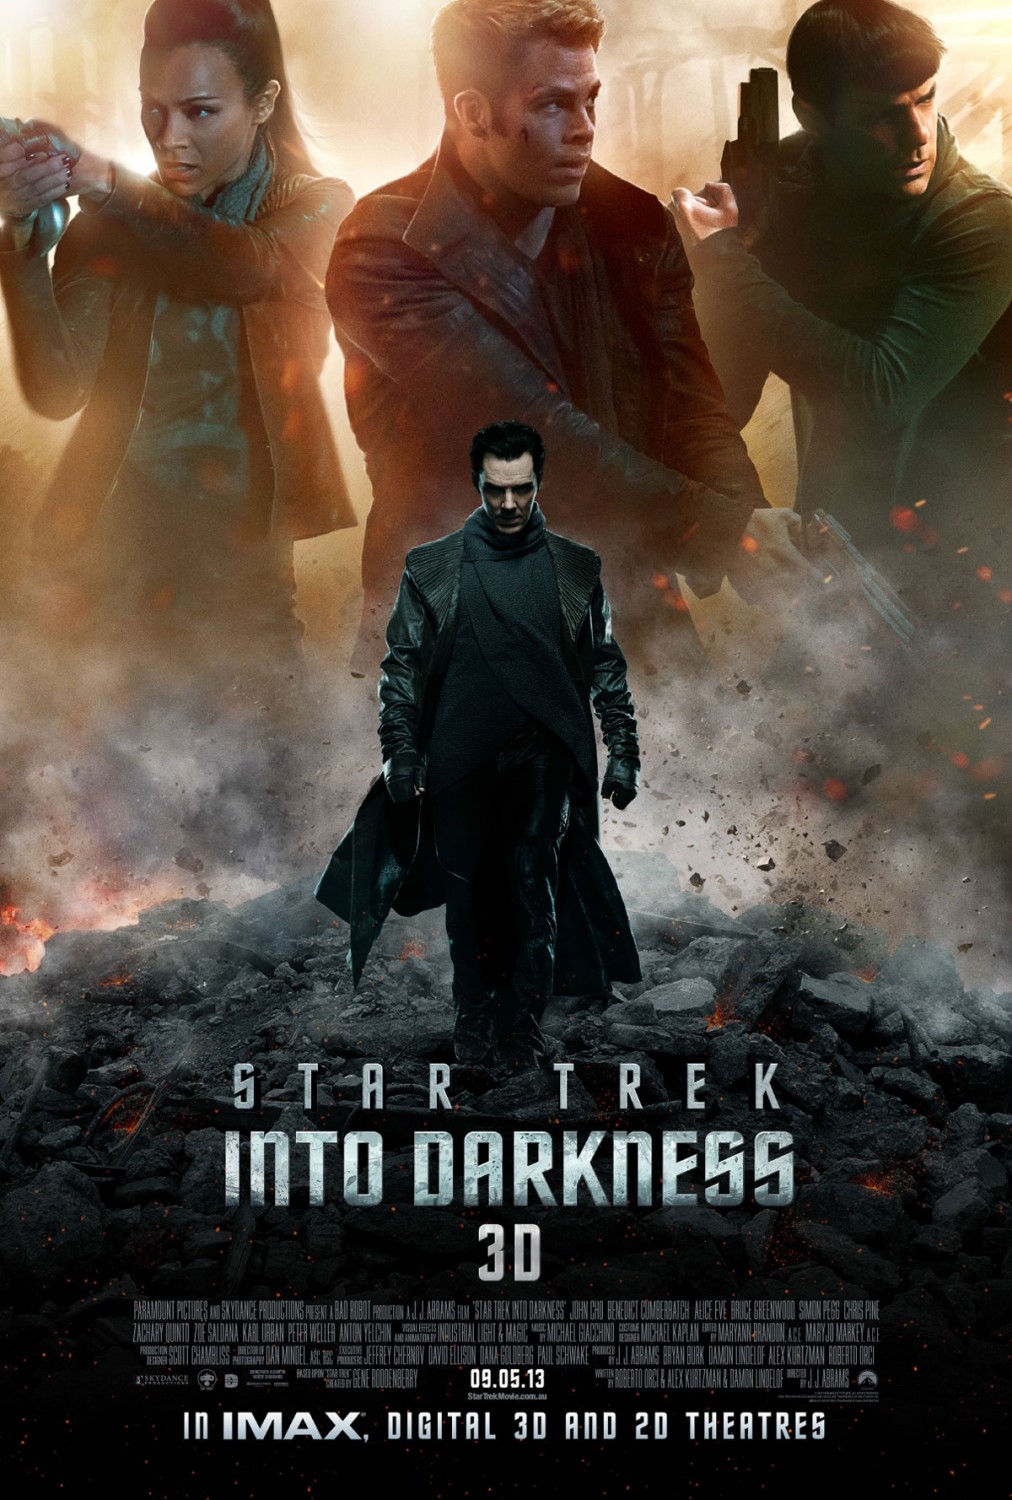 FULL MOVIE: Star Trek Into Darkness (2013)